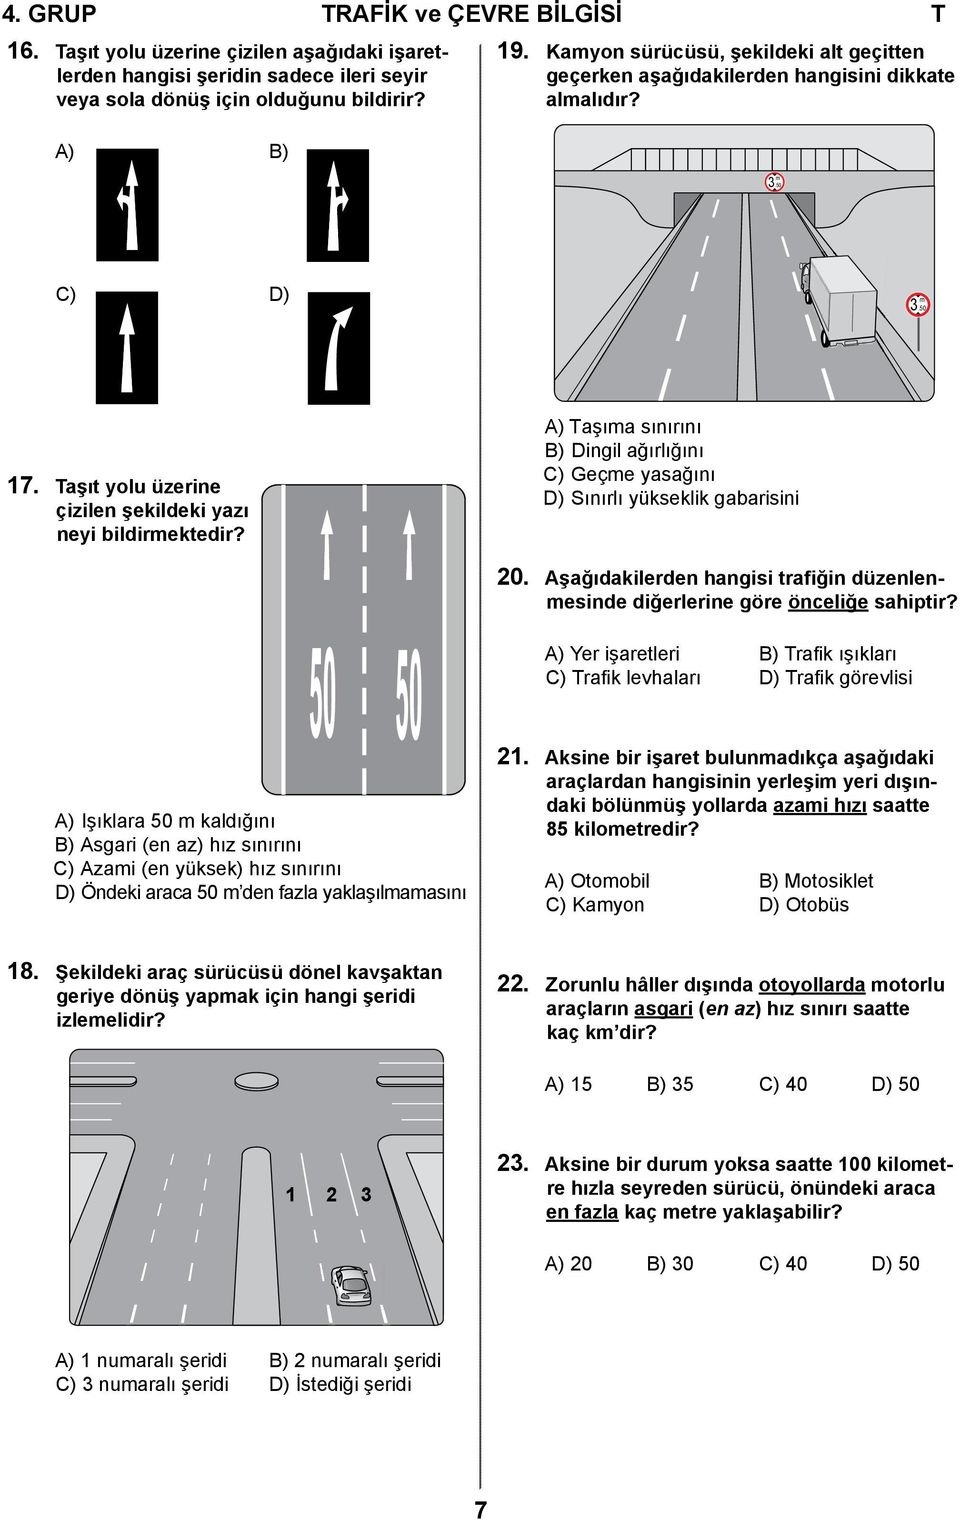 A) Taşıma sınırını B) Dingil ağırlığını C) Geçme yasağını D) Sınırlı yükseklik gabarisini 20. Aşağıdakilerden hangisi trafiğin düzenlenmesinde diğerlerine göre önceliğe sahiptir?